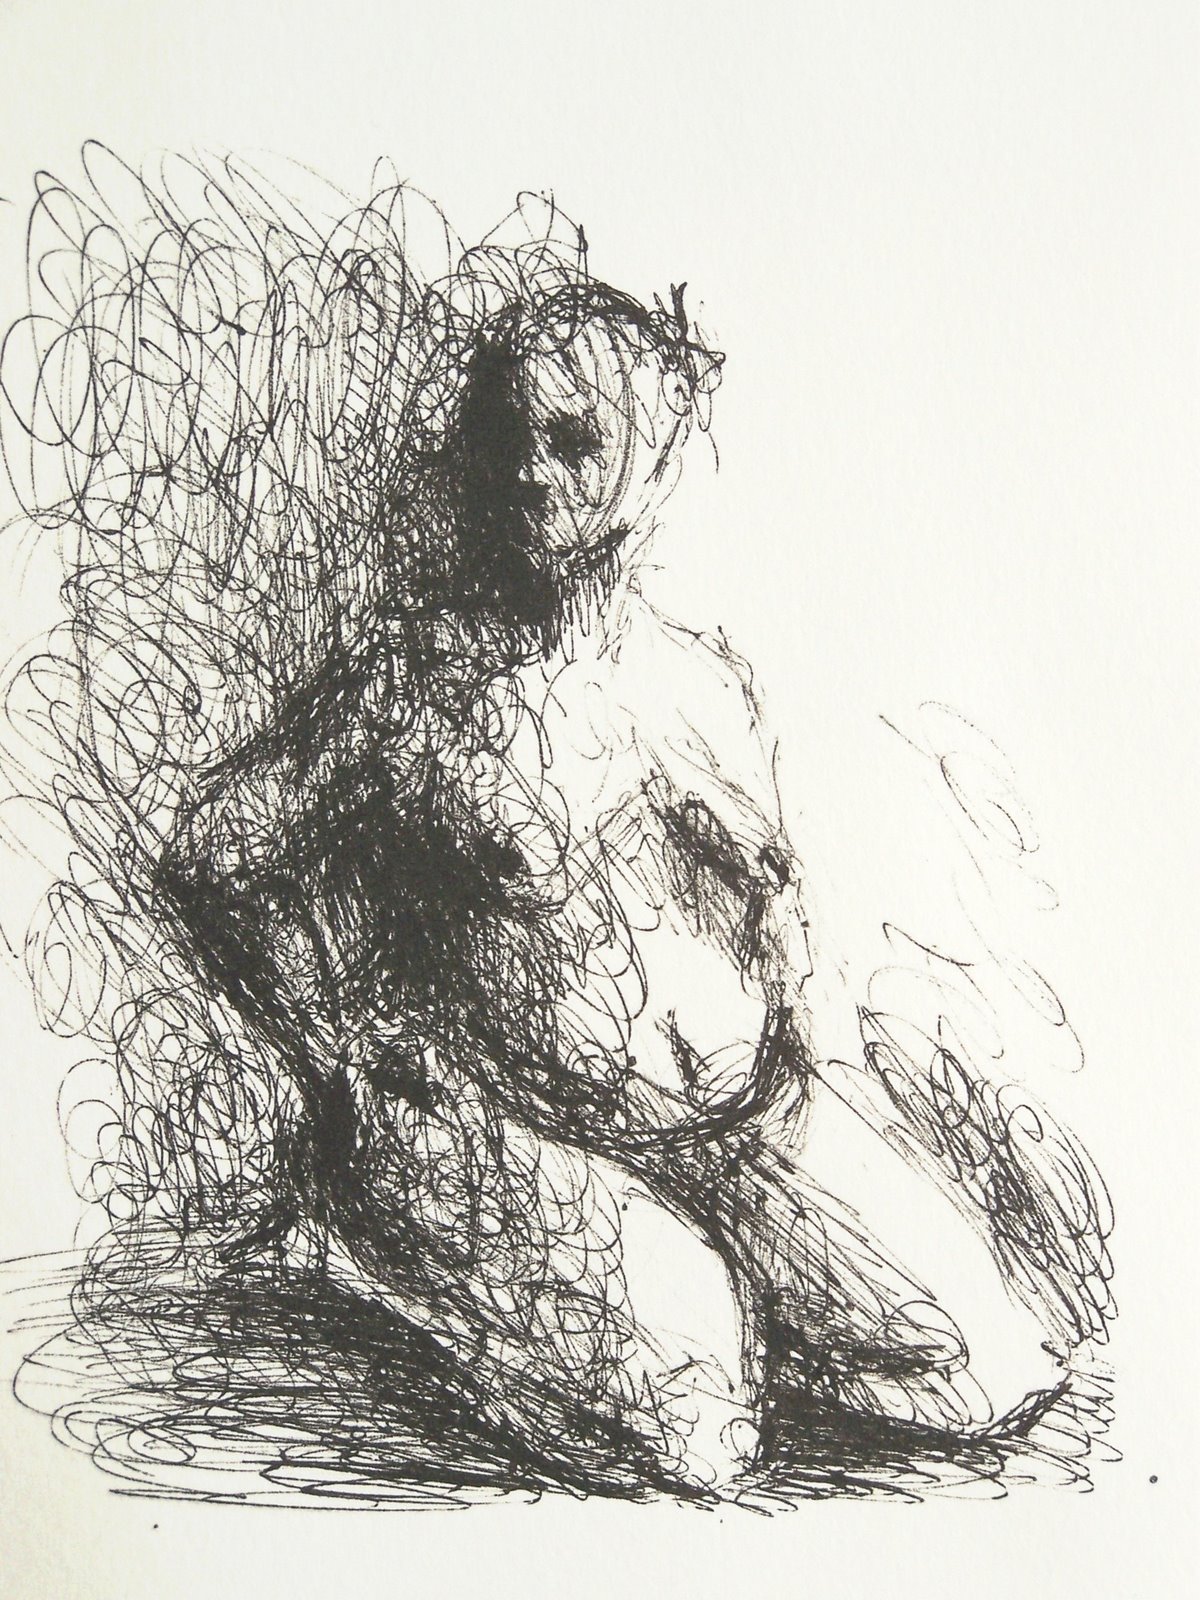 De la colección "La Mujer al Desnudo"   ·   From Collection "The Woman Naked"